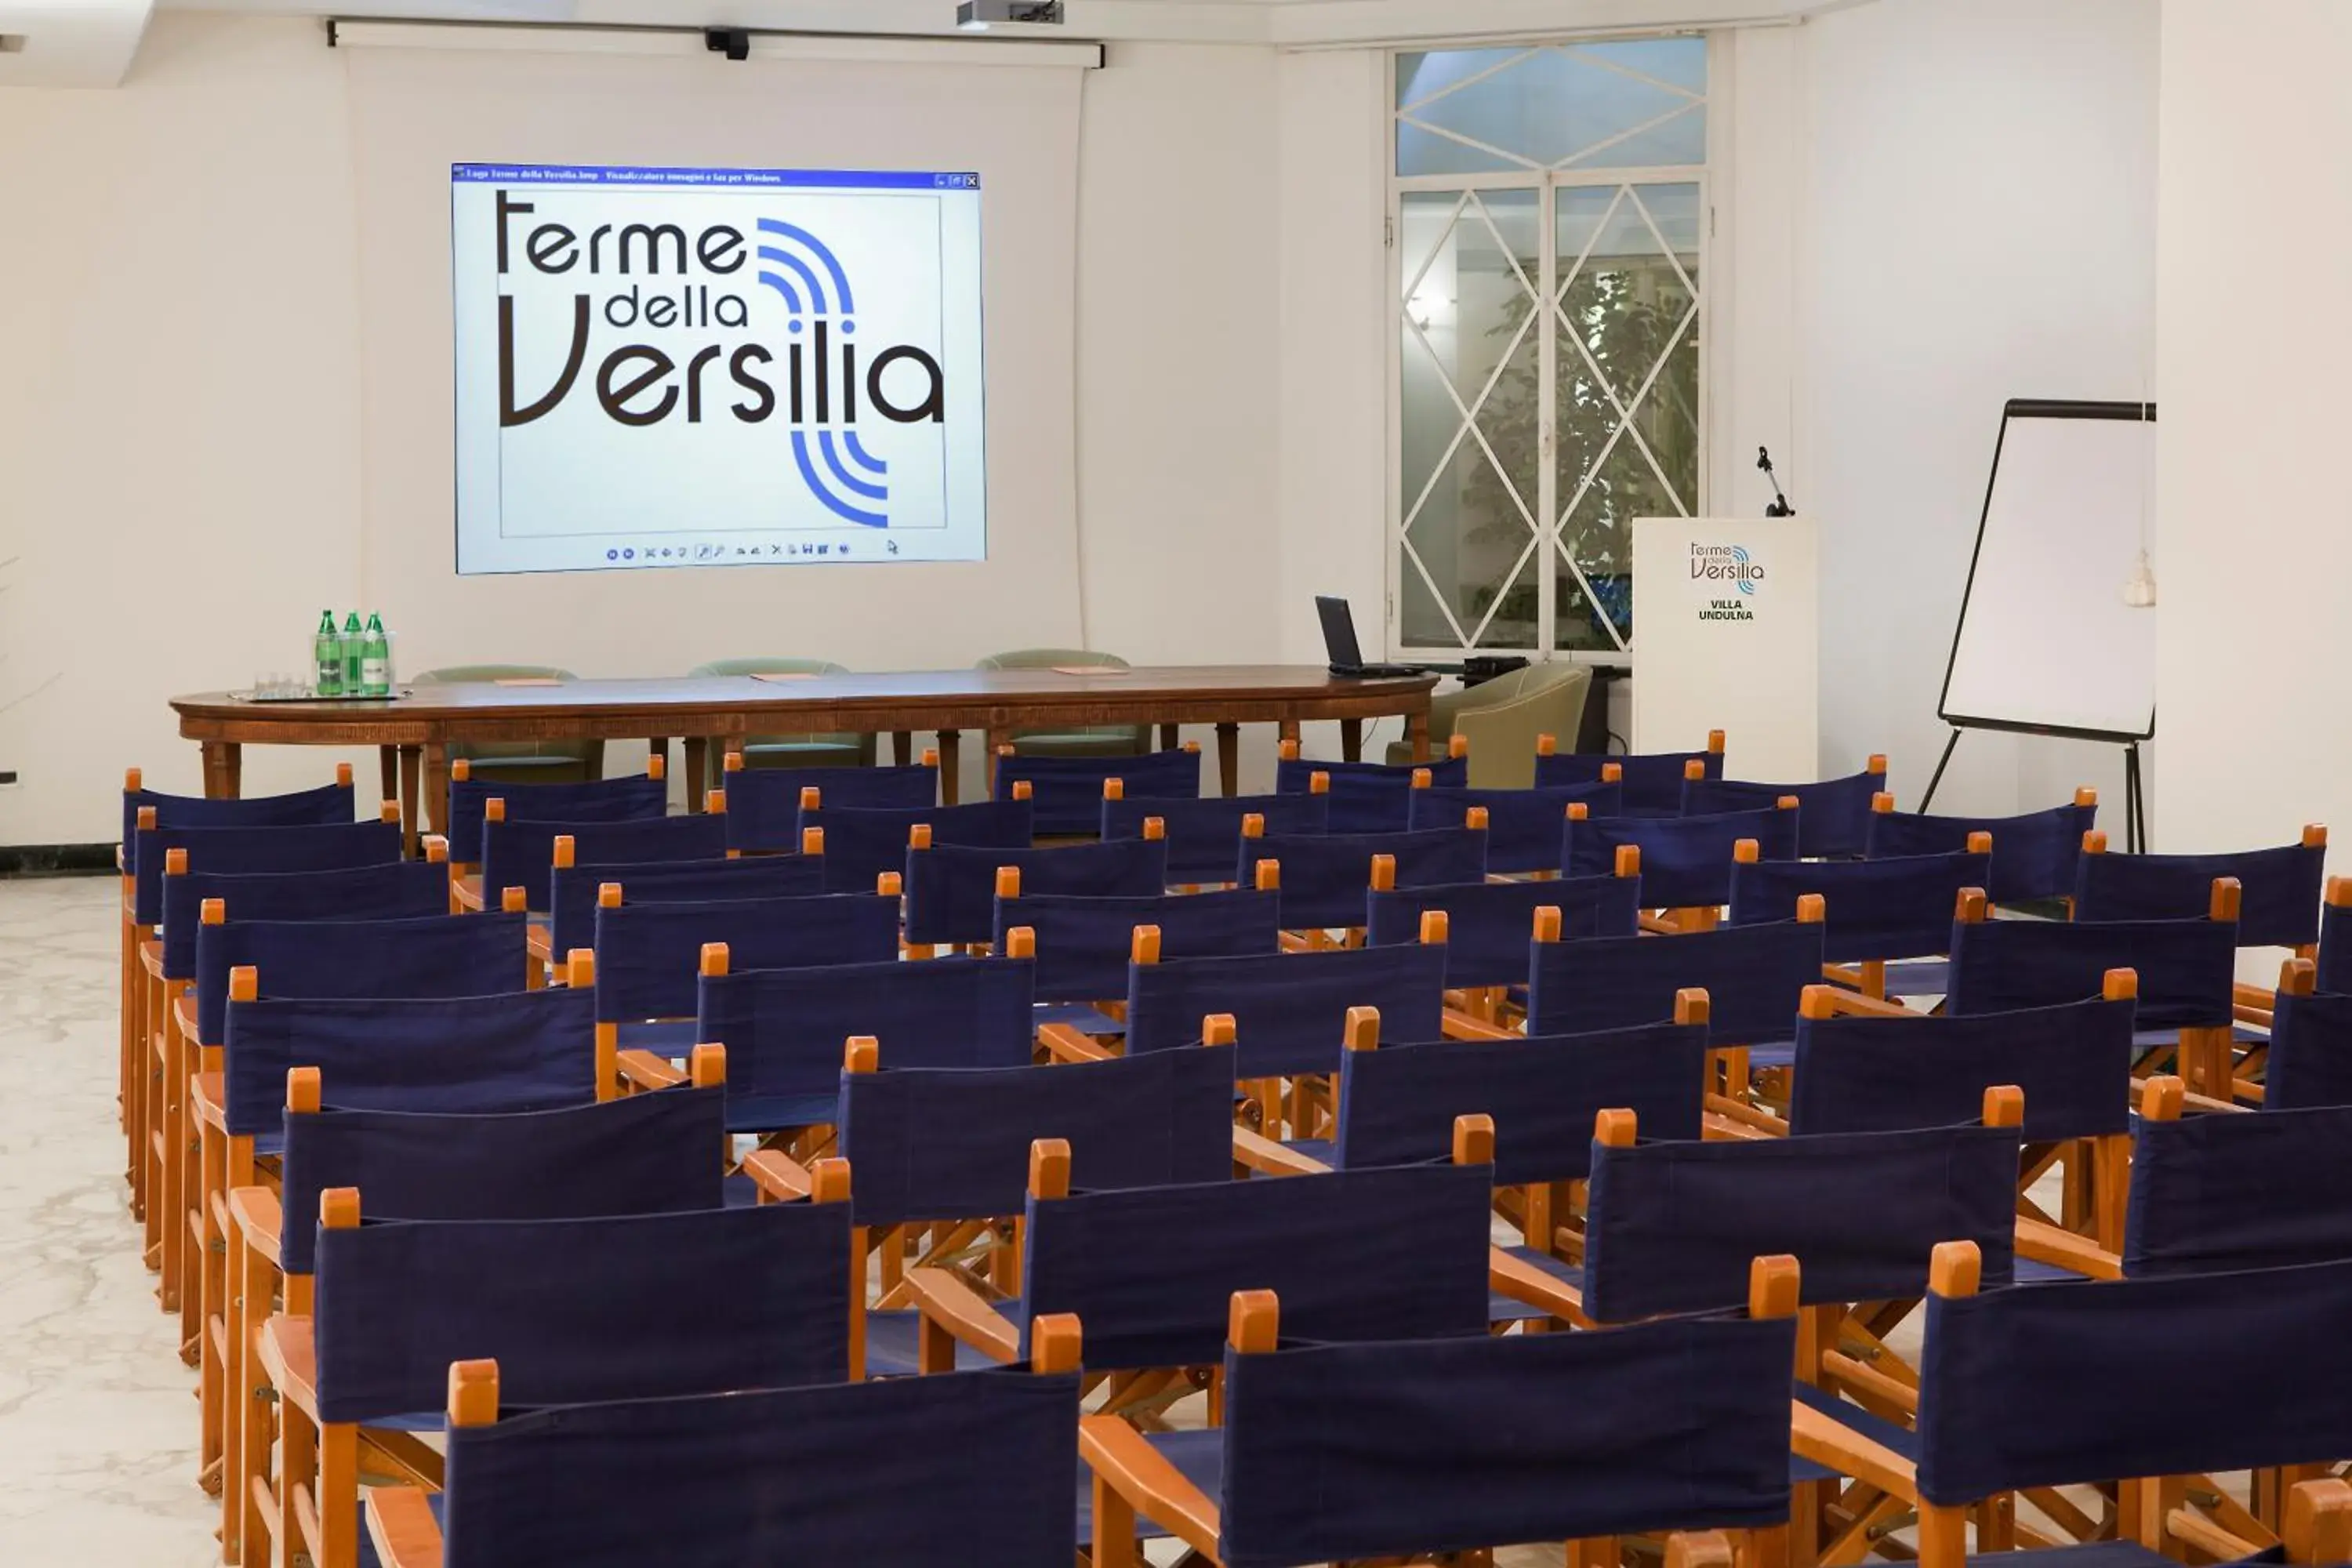 Business facilities in Hotel Villa Undulna - Terme della Versilia